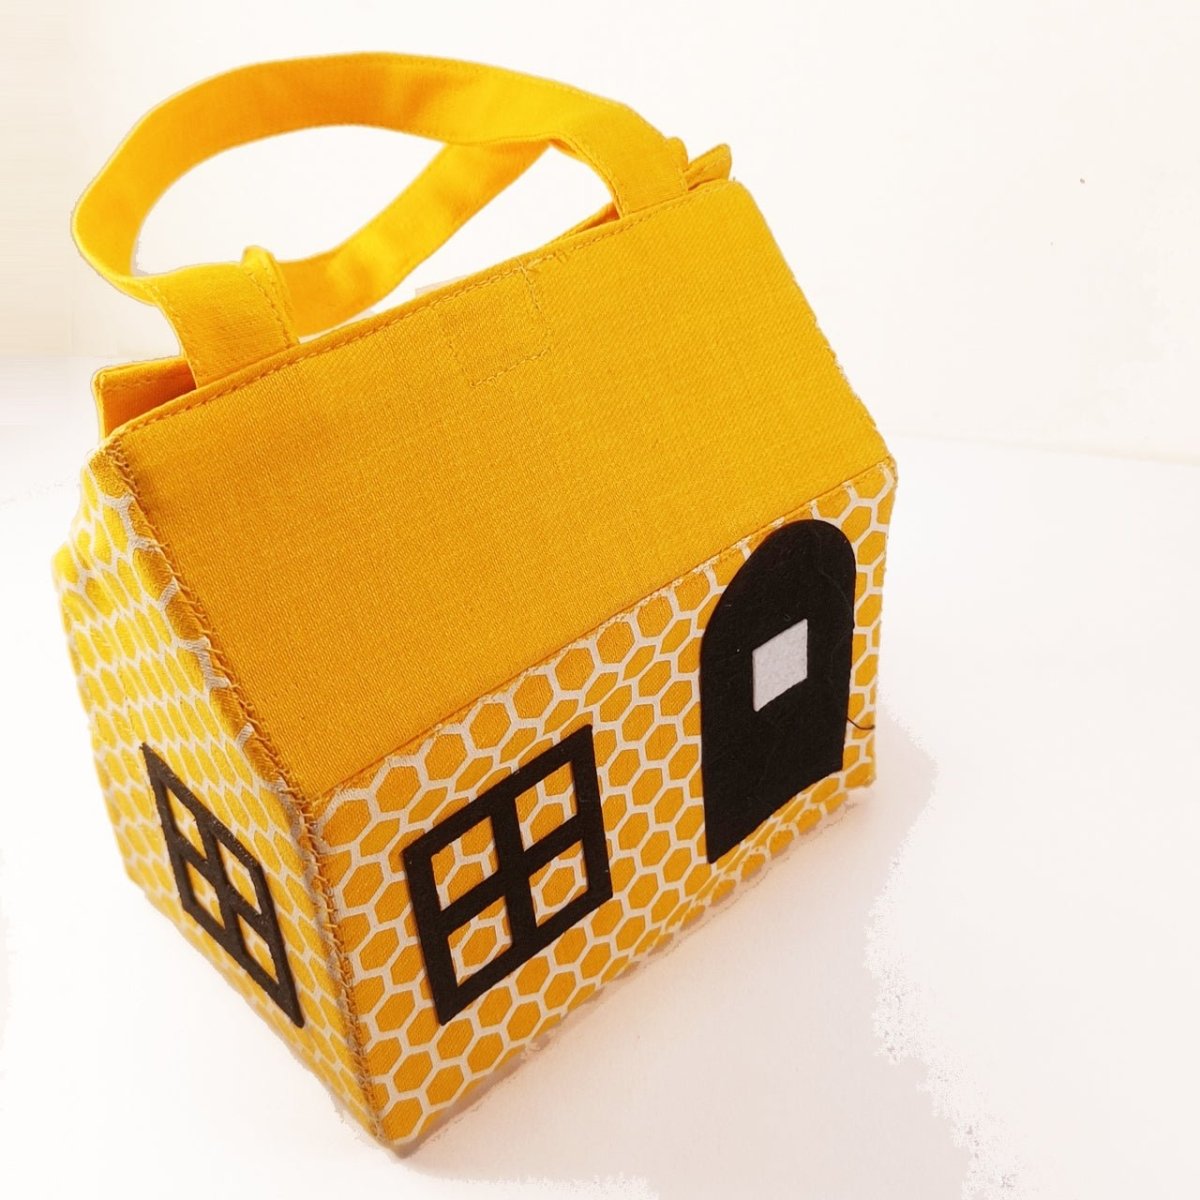 CuddlyCoo Fabric Doll House- House - CCDOLLHOUSEBAGHOUSE